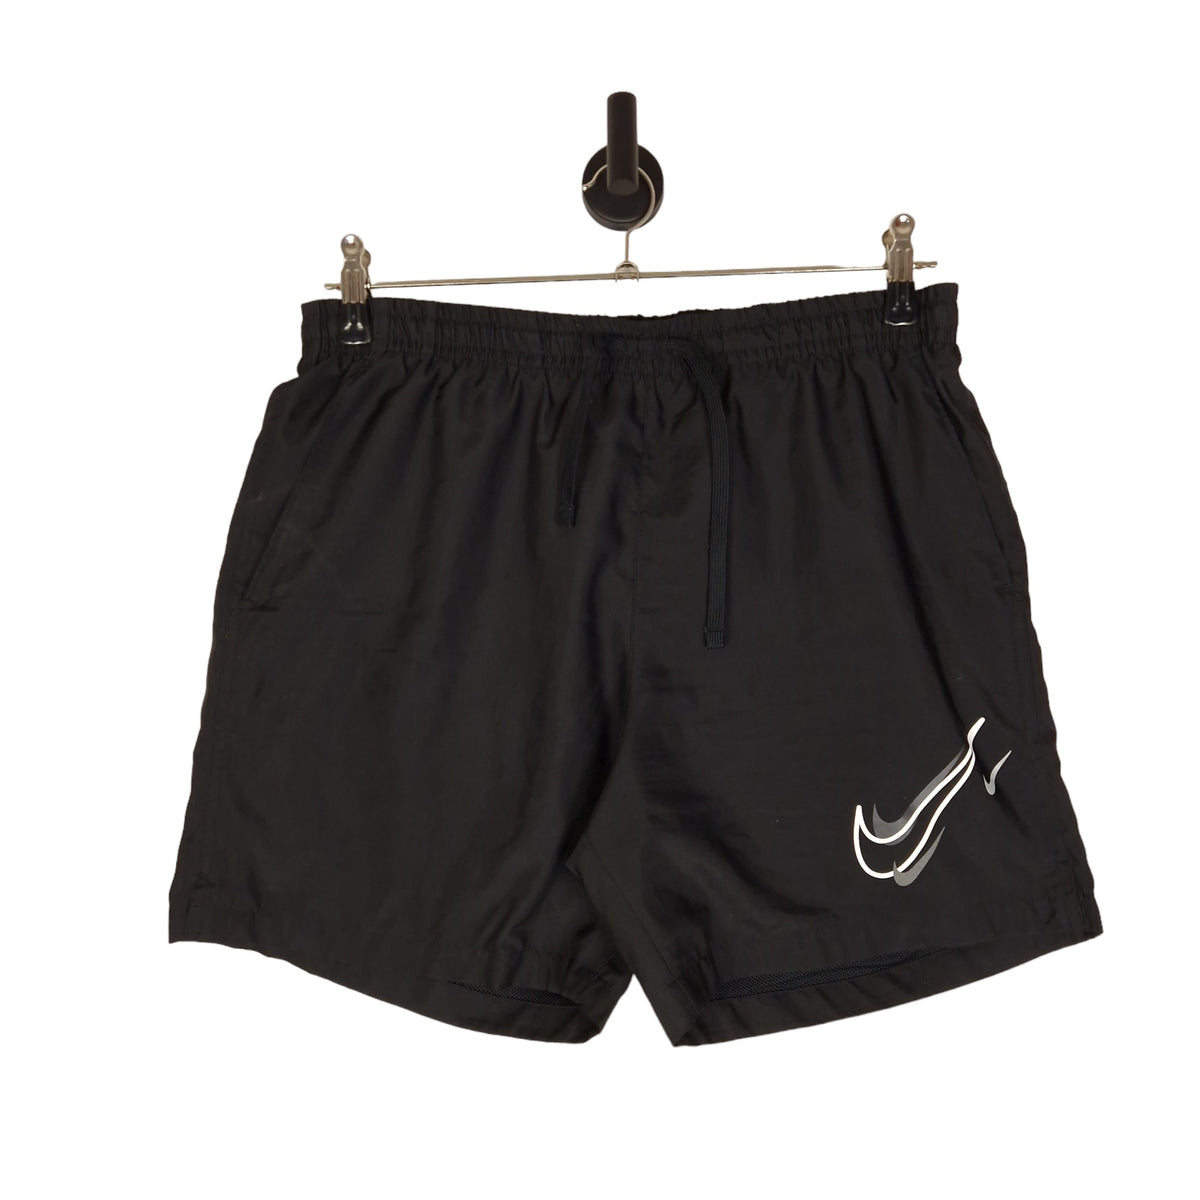 Nike Shorts  - Size Large